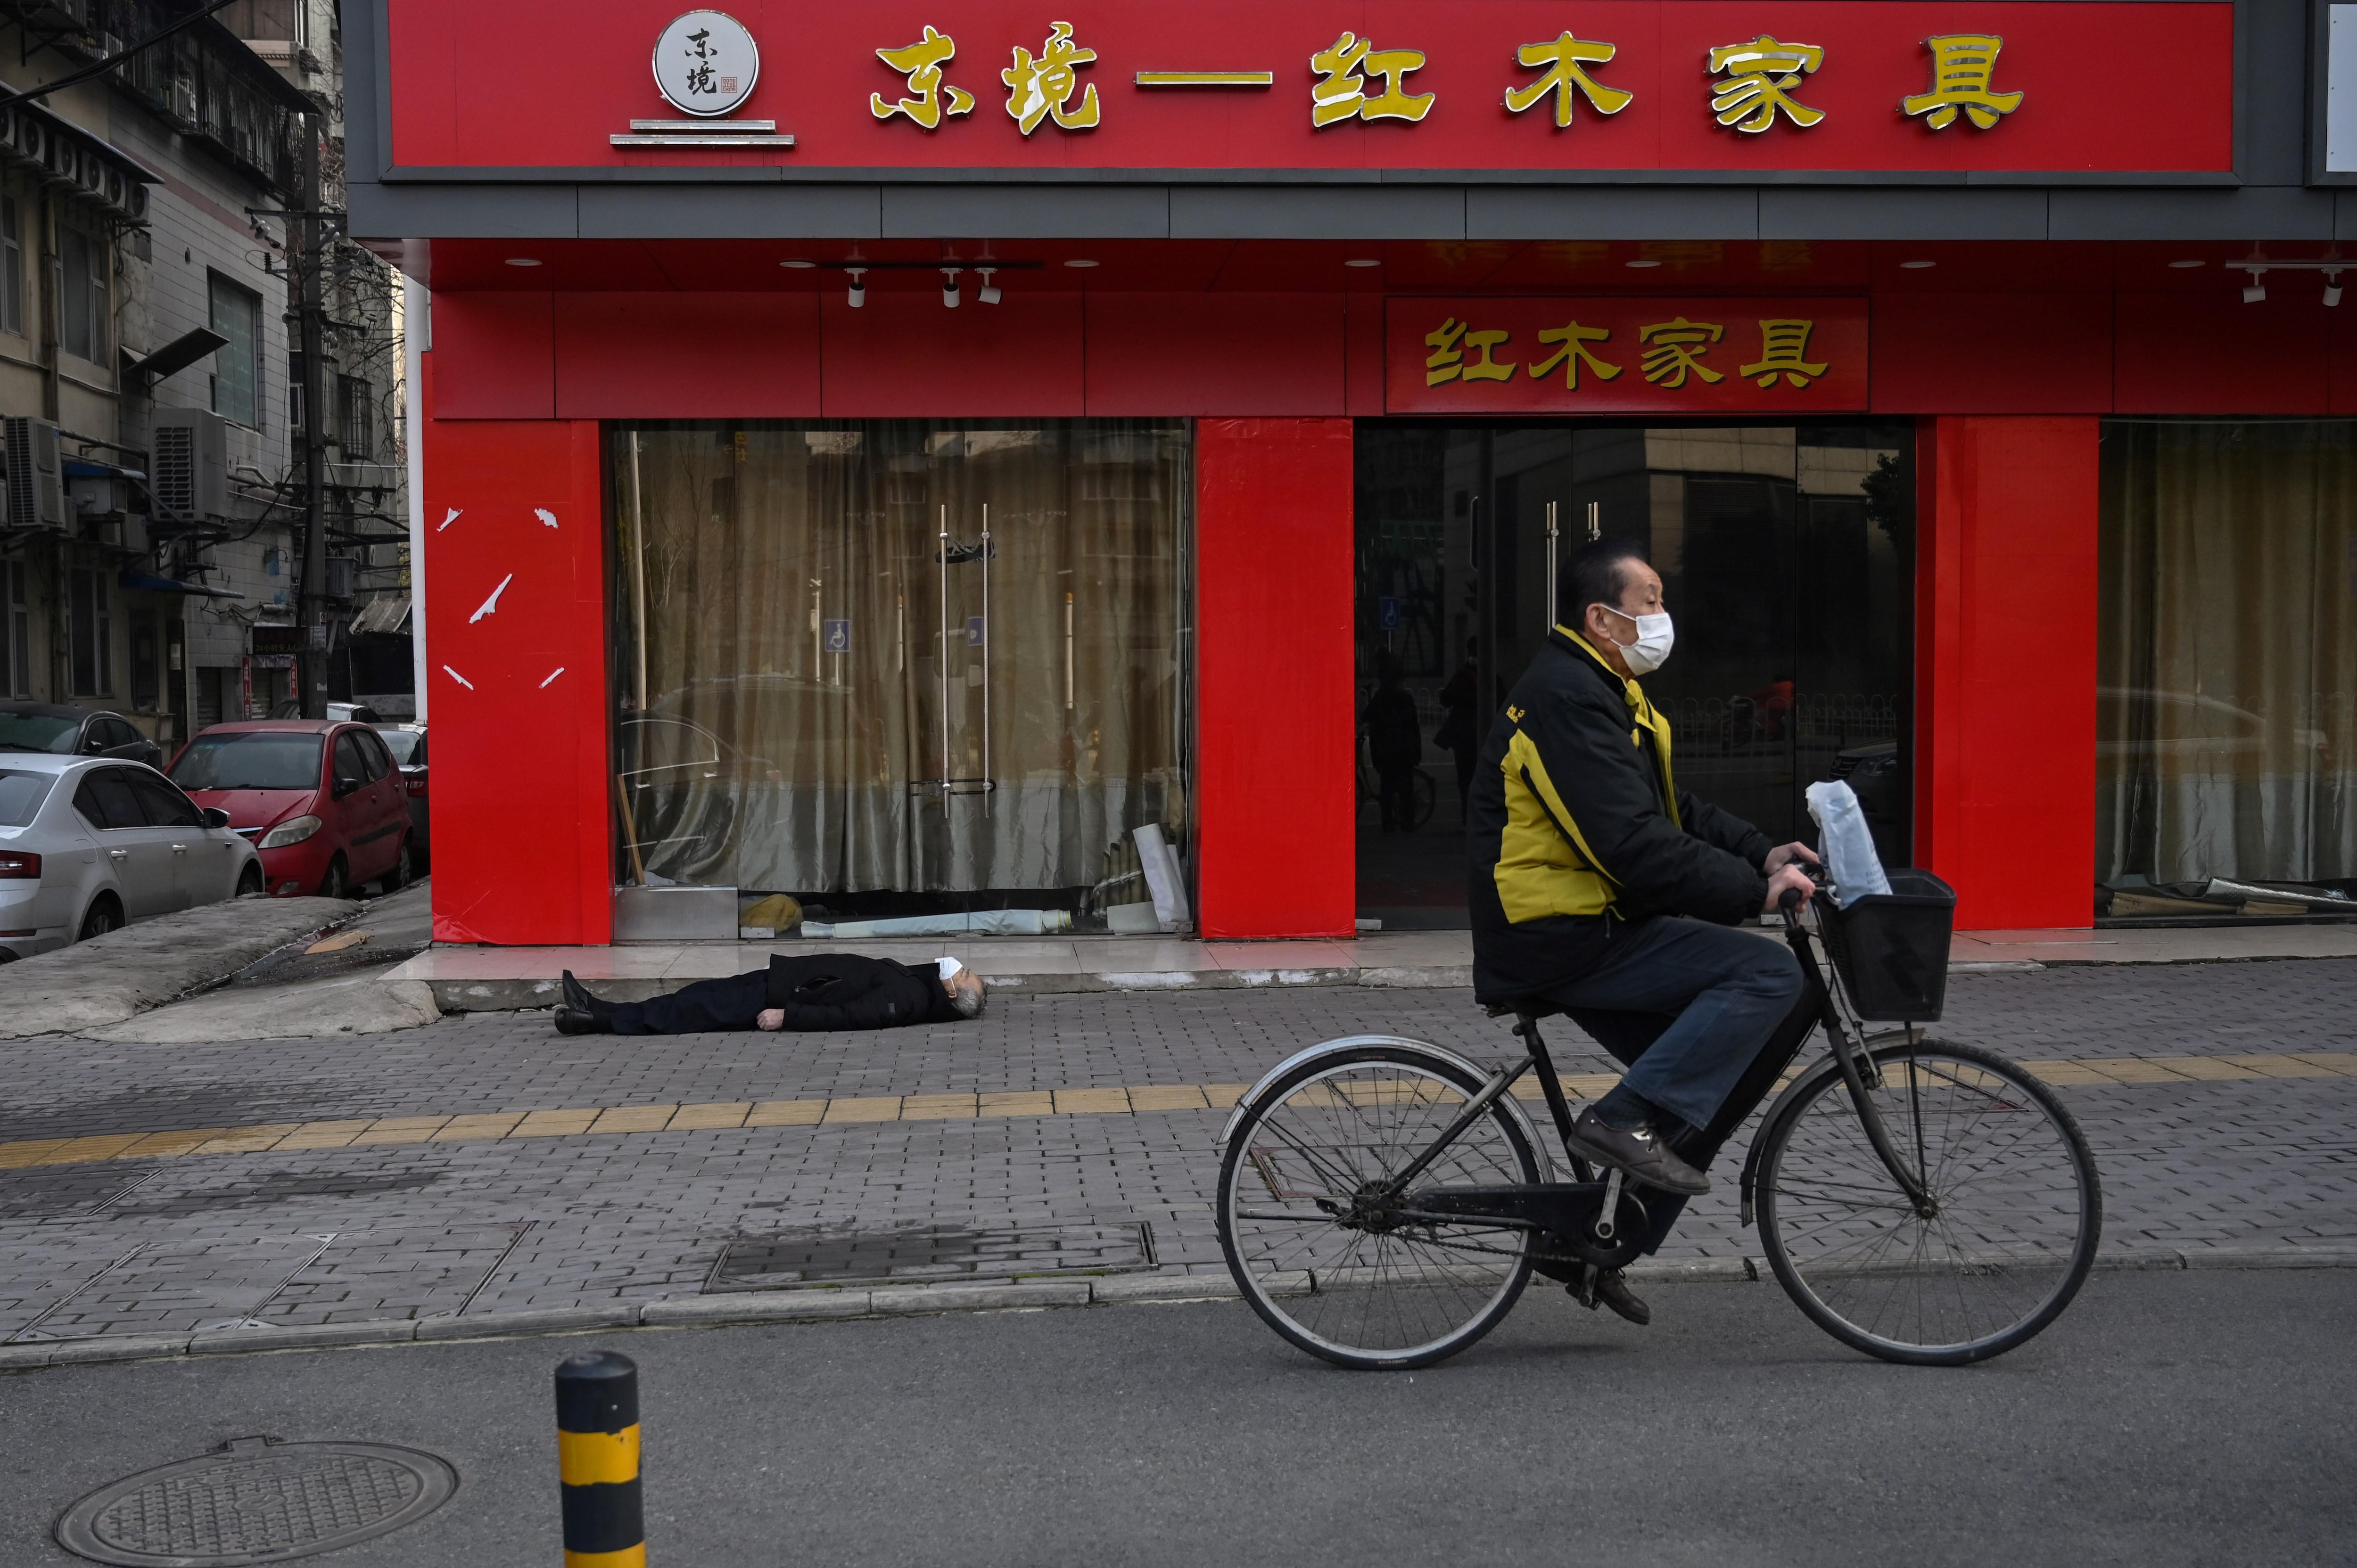 La fotografía, tomada por Héctor Retamal de la agencia AFP, muestra a un hombre muerto y a un ciclista que pasa cerca sin hacer nada ni mostrar reacción alguna. Foto: AFP/ Héctor Retamal